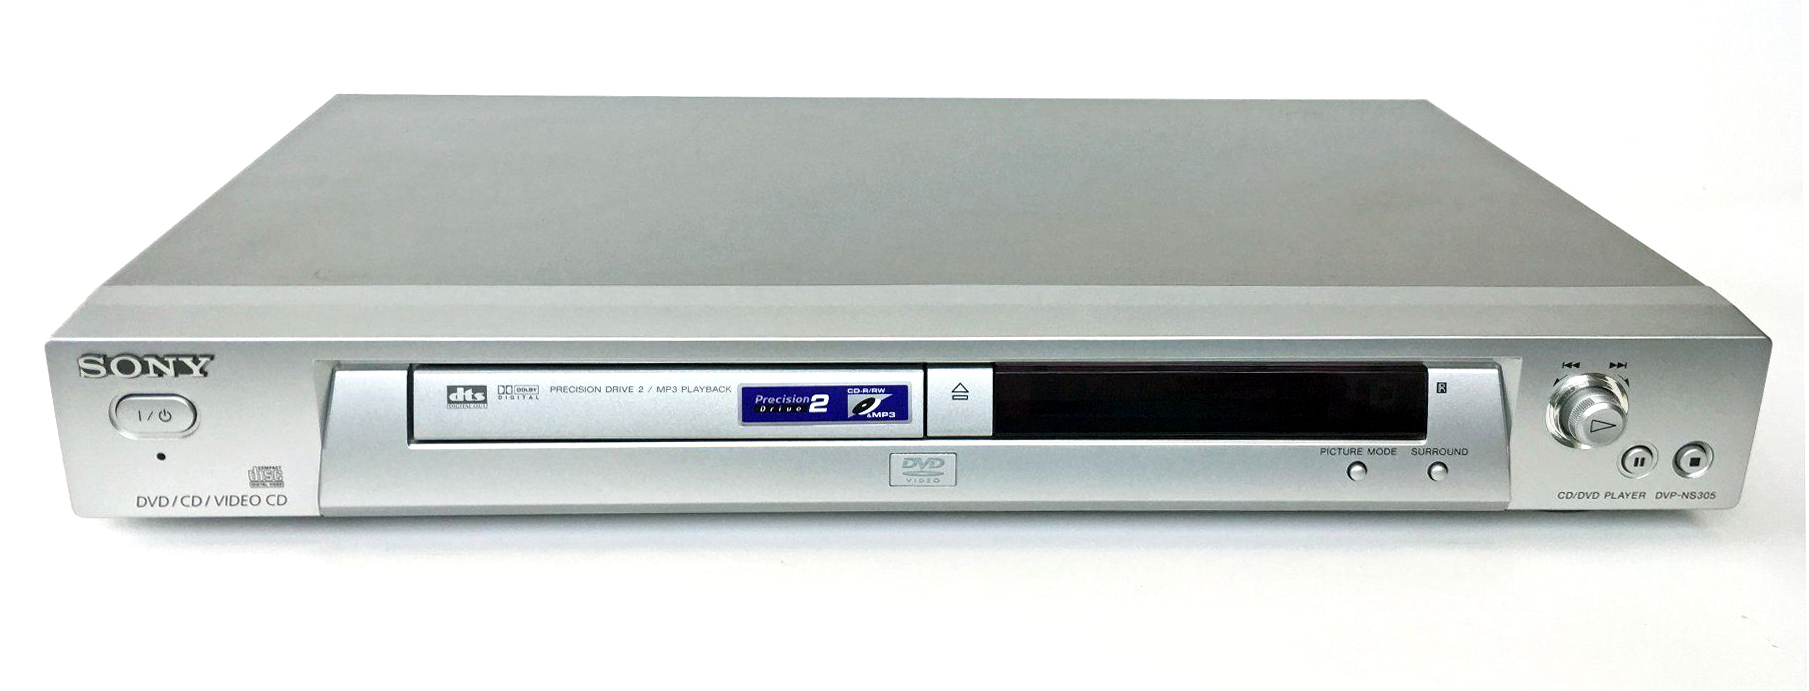 Sony DVP-NS 305-2002.jpg